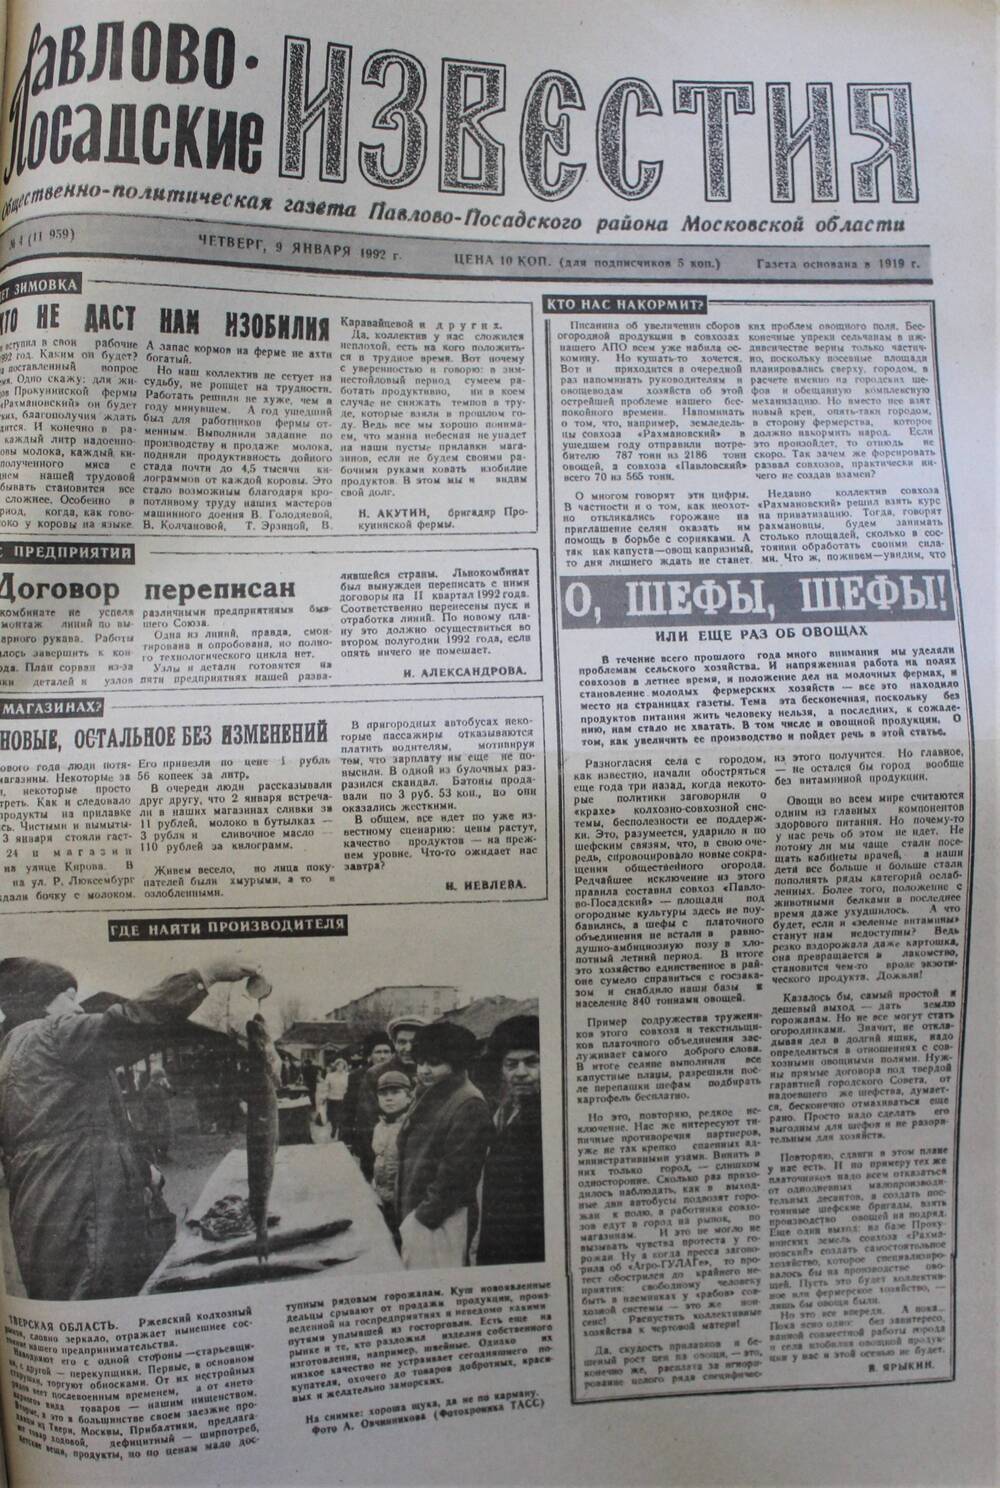 Газета Павлово-Посадские известия № 4 (11959)  от 9 января 1992 г.